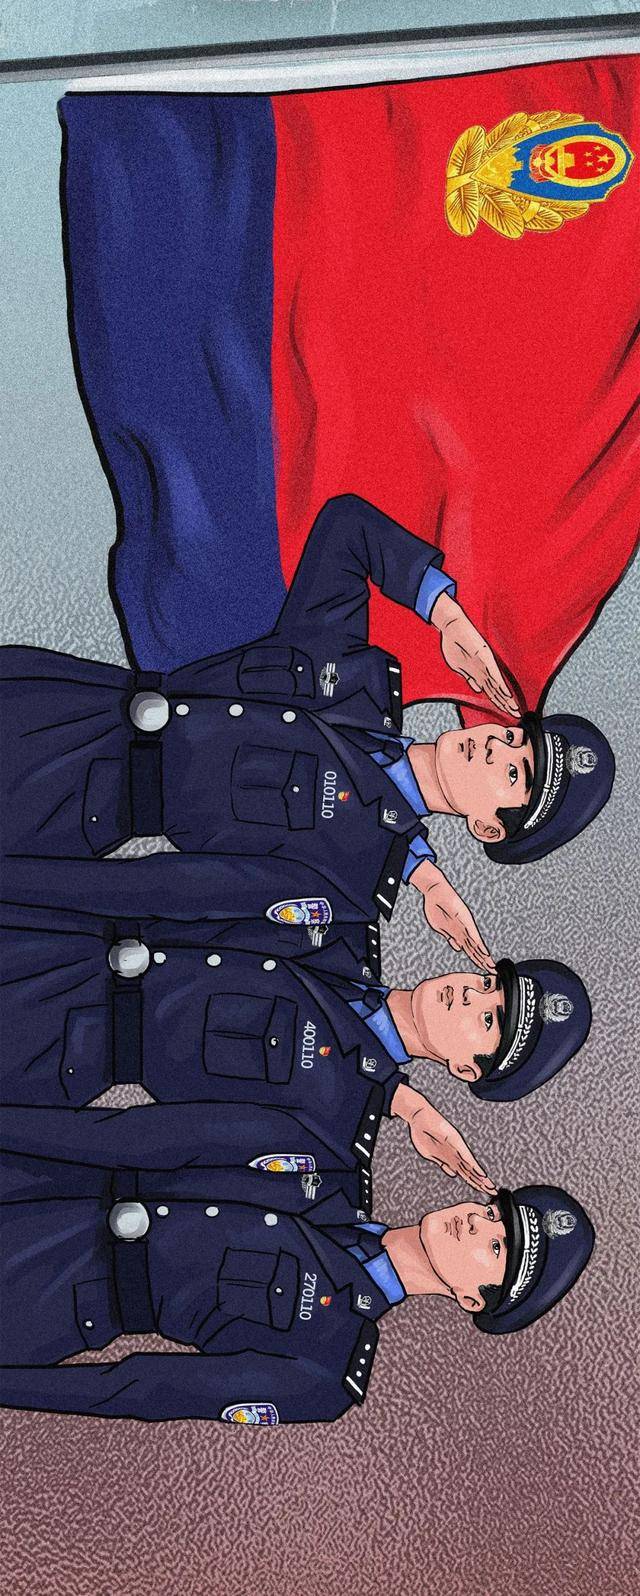 中国警察手机壁纸竖图图片